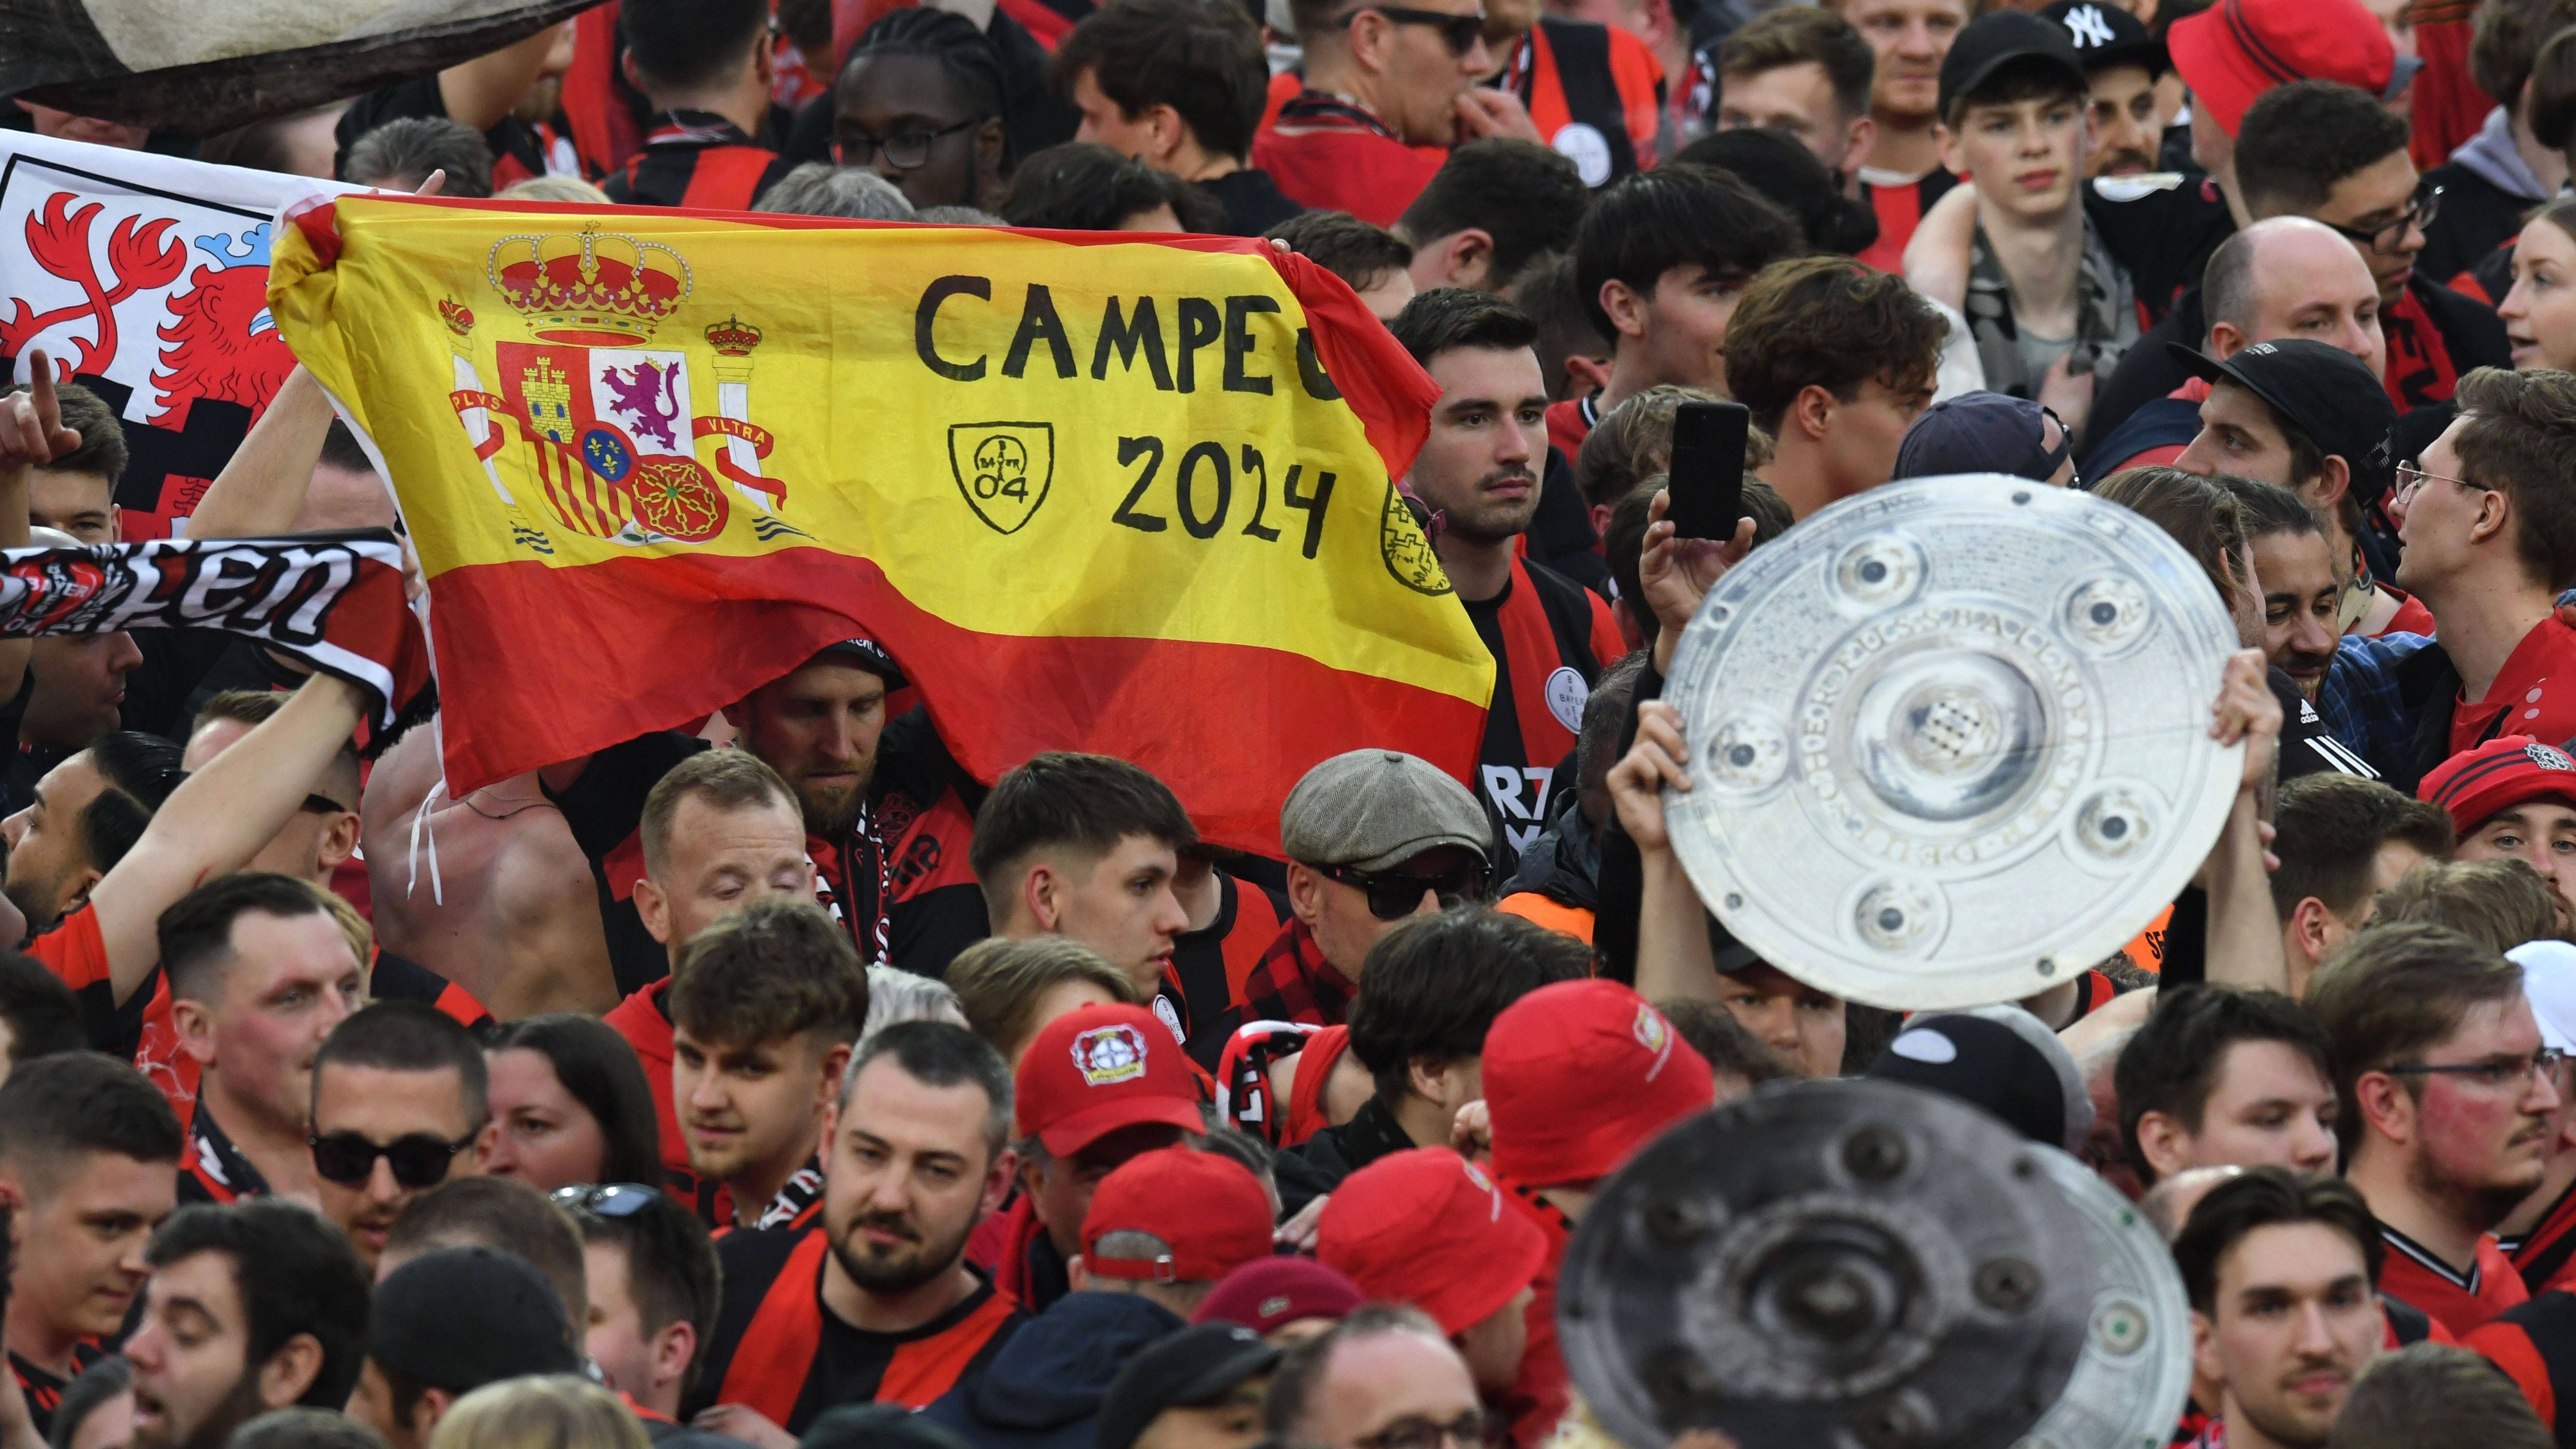 <strong>Bayer Leverkusen: Die besten Bilder der Meisterfeier</strong><br>Dass ihr Erfolgstrainer Spanier ist, zeigt die Bayer-Fangemeinde auf dem Rasen mit der entsprechenden Nationalflagge und der Aufschrift: "Campeon 2024". Übersetzung überflüssig.